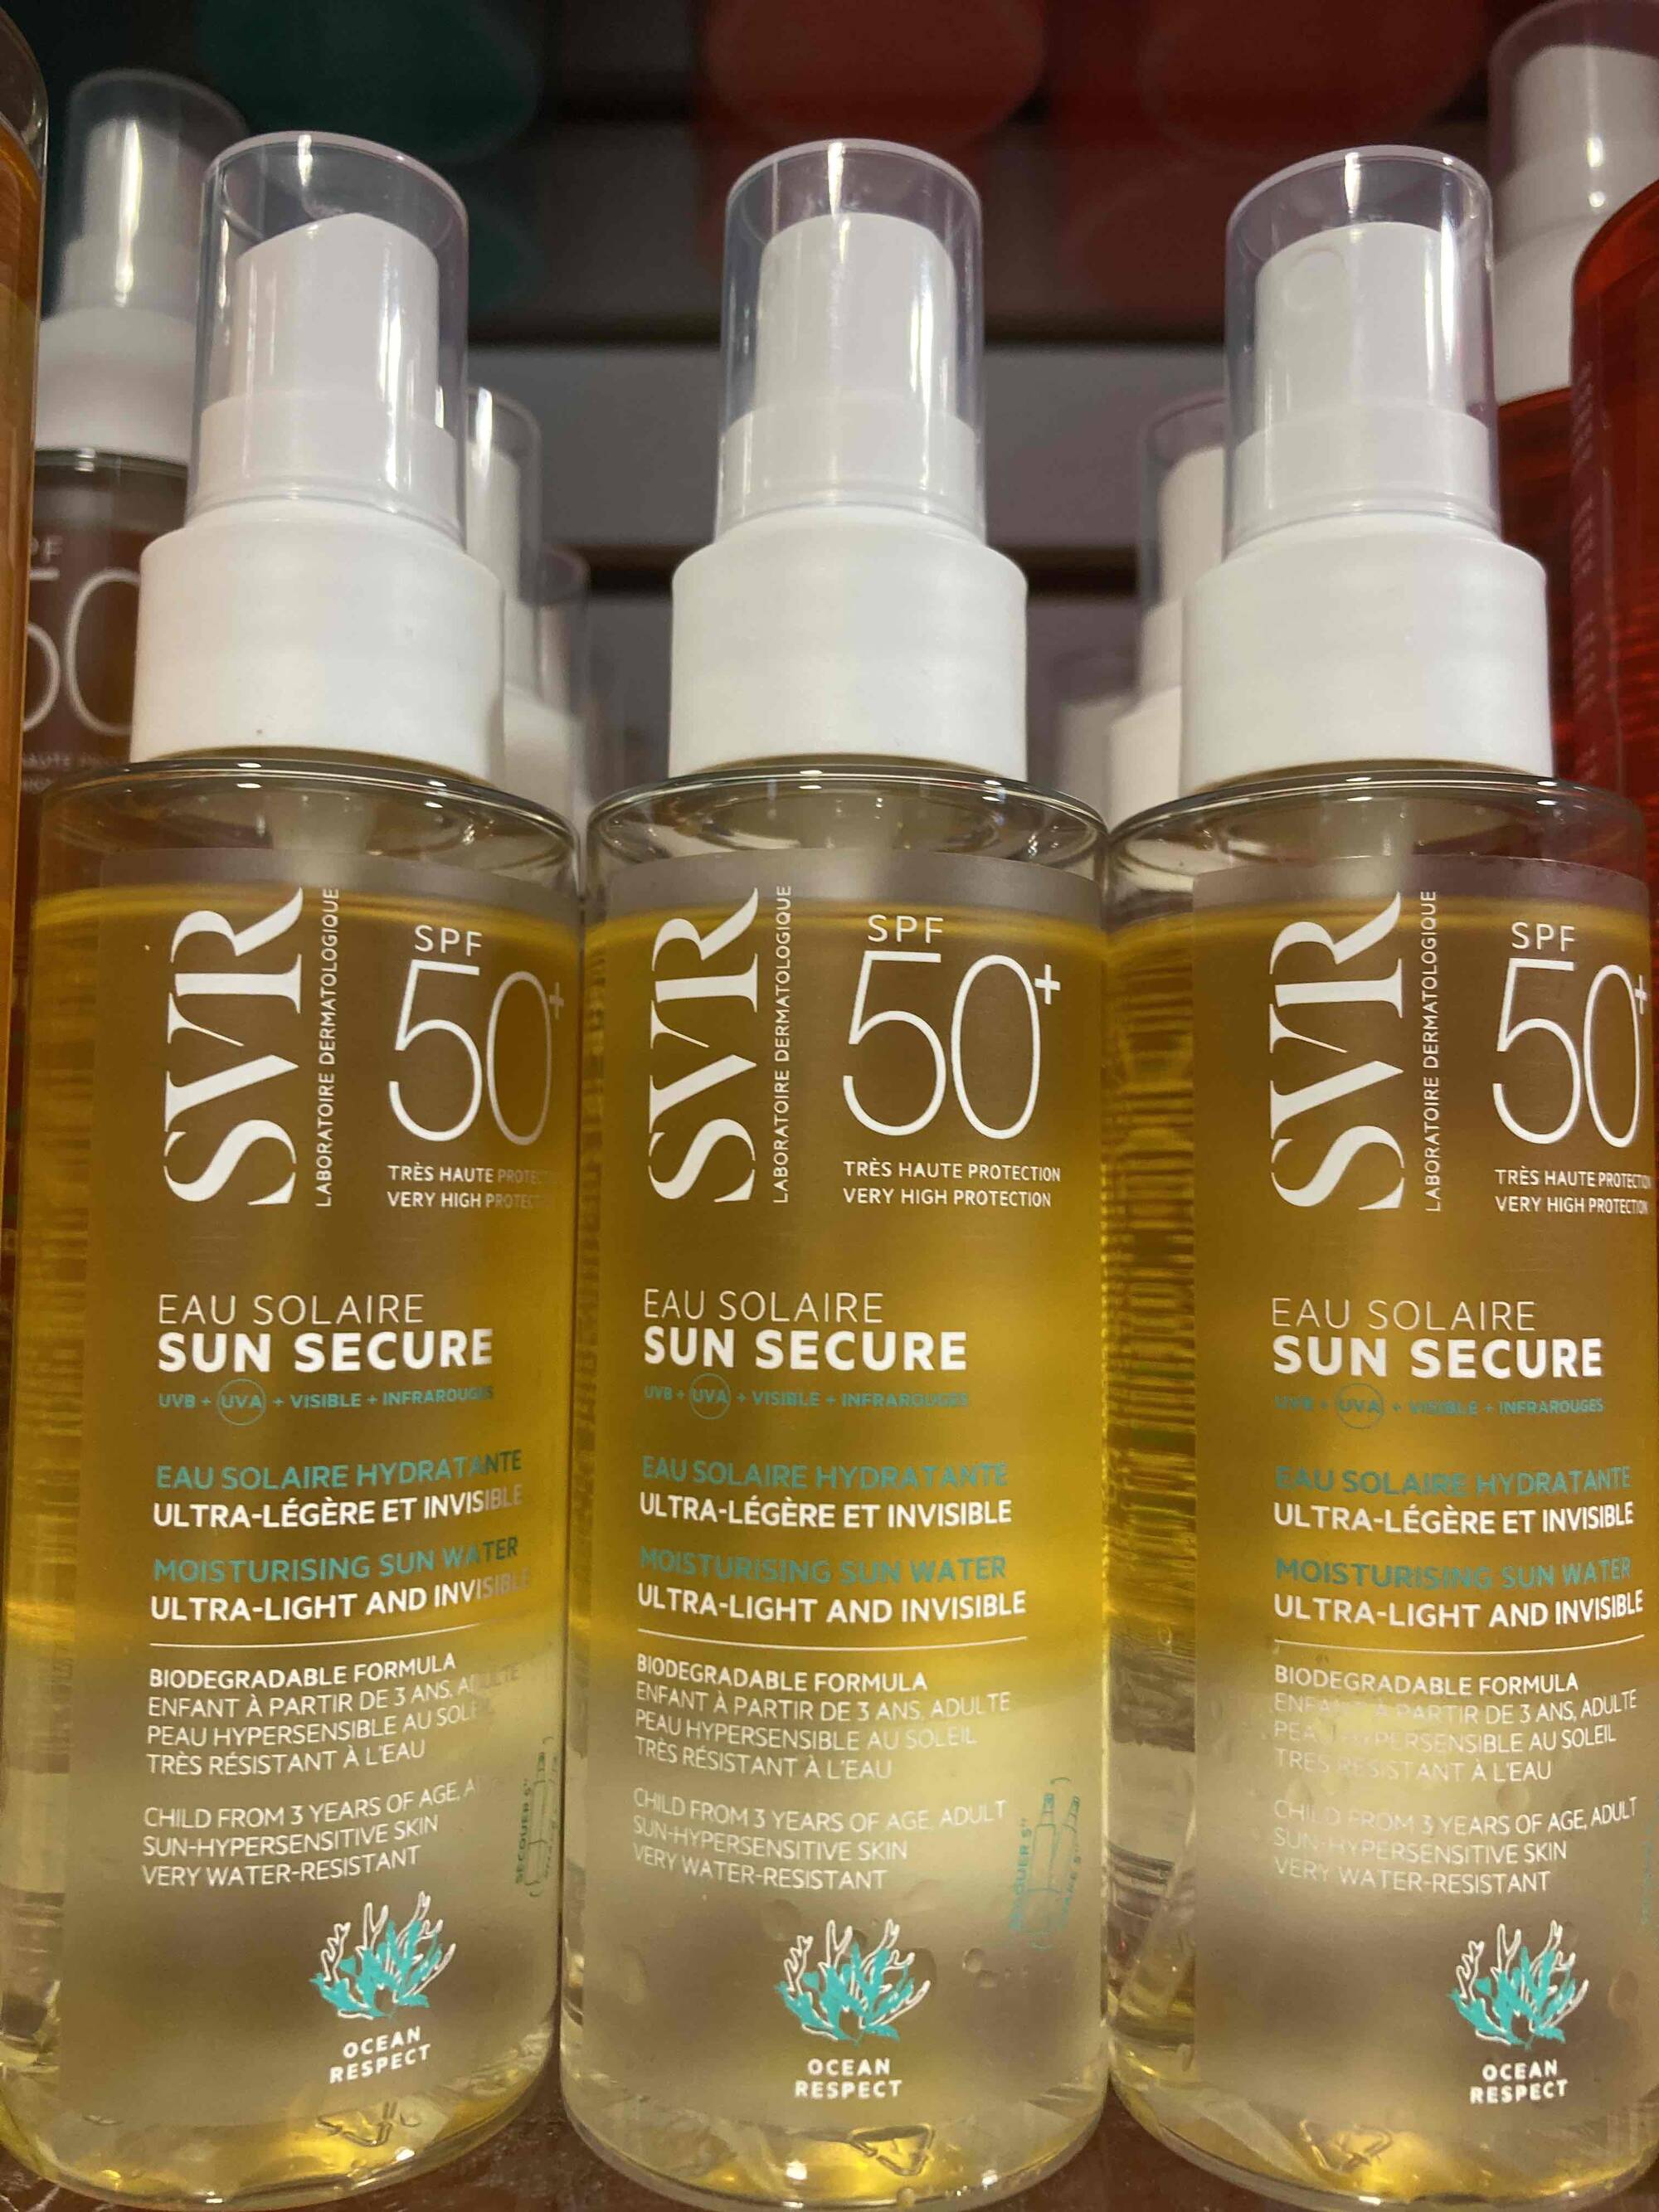 SVR - Sun secure - Eau solaire SPF 50+